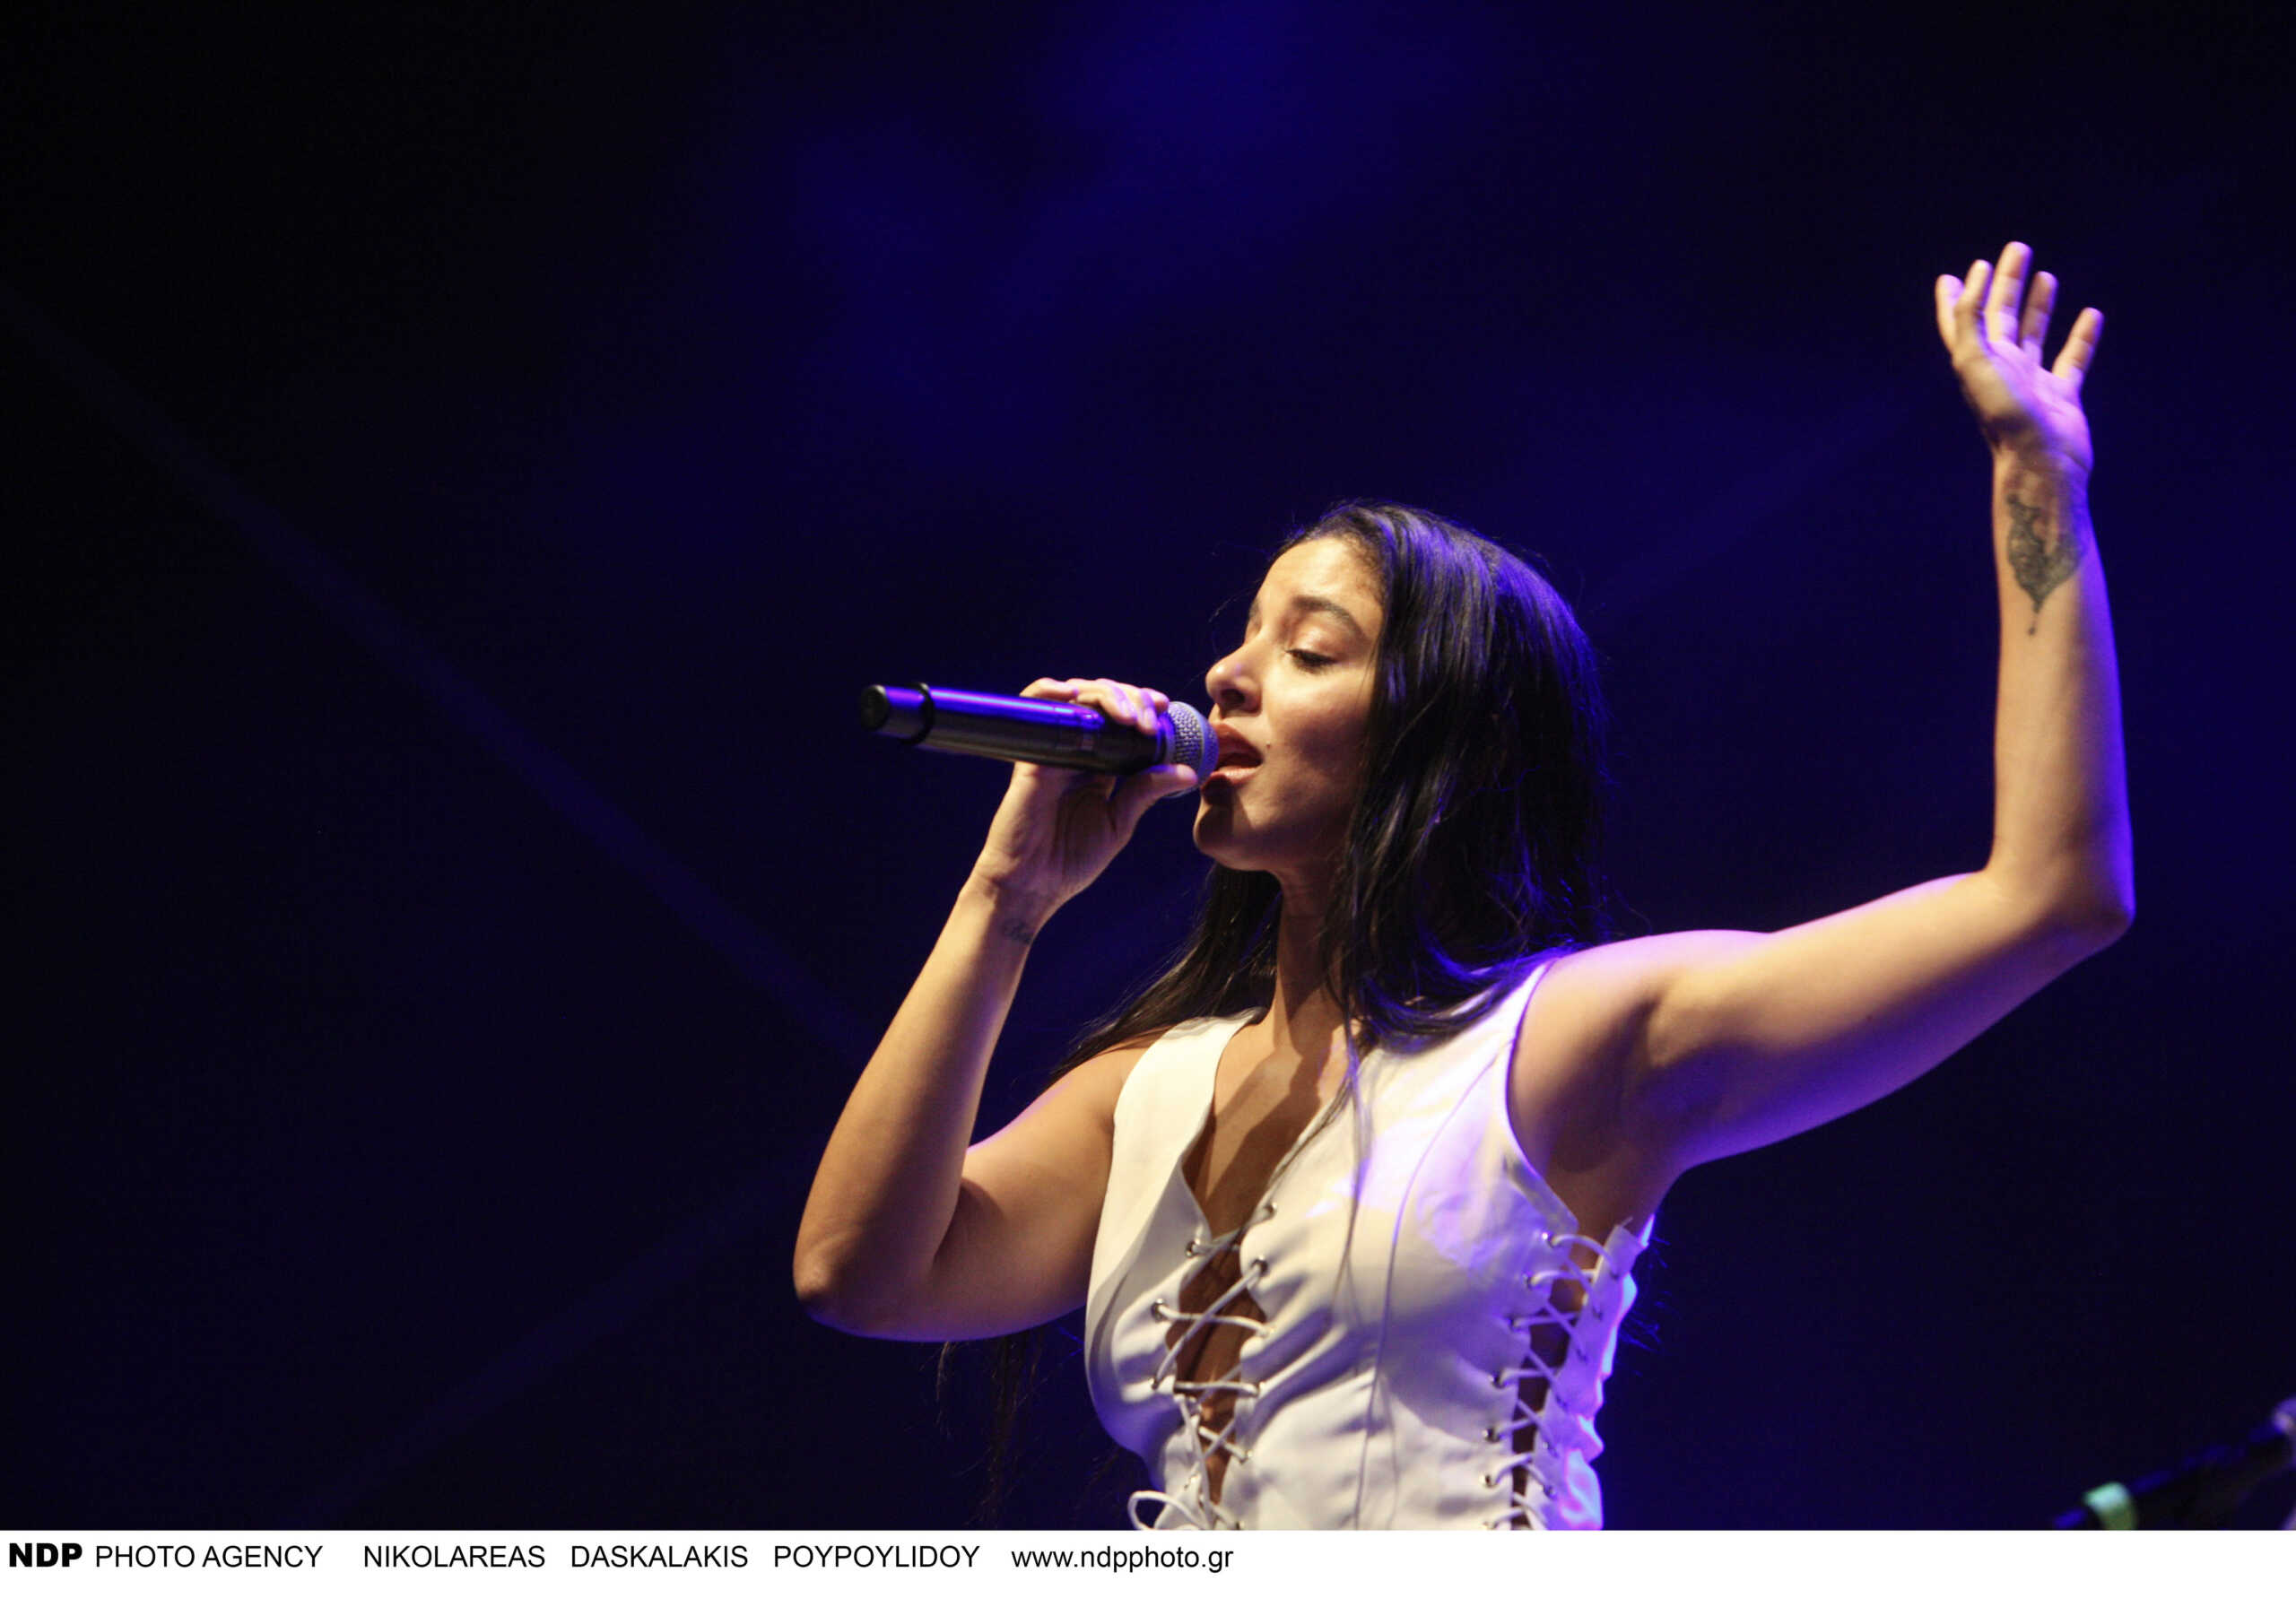 Μαρίνα Σάττι: Χαίρομαι που μου ανατέθηκε η Eurovision, νιώθω εθνικός ήρωας